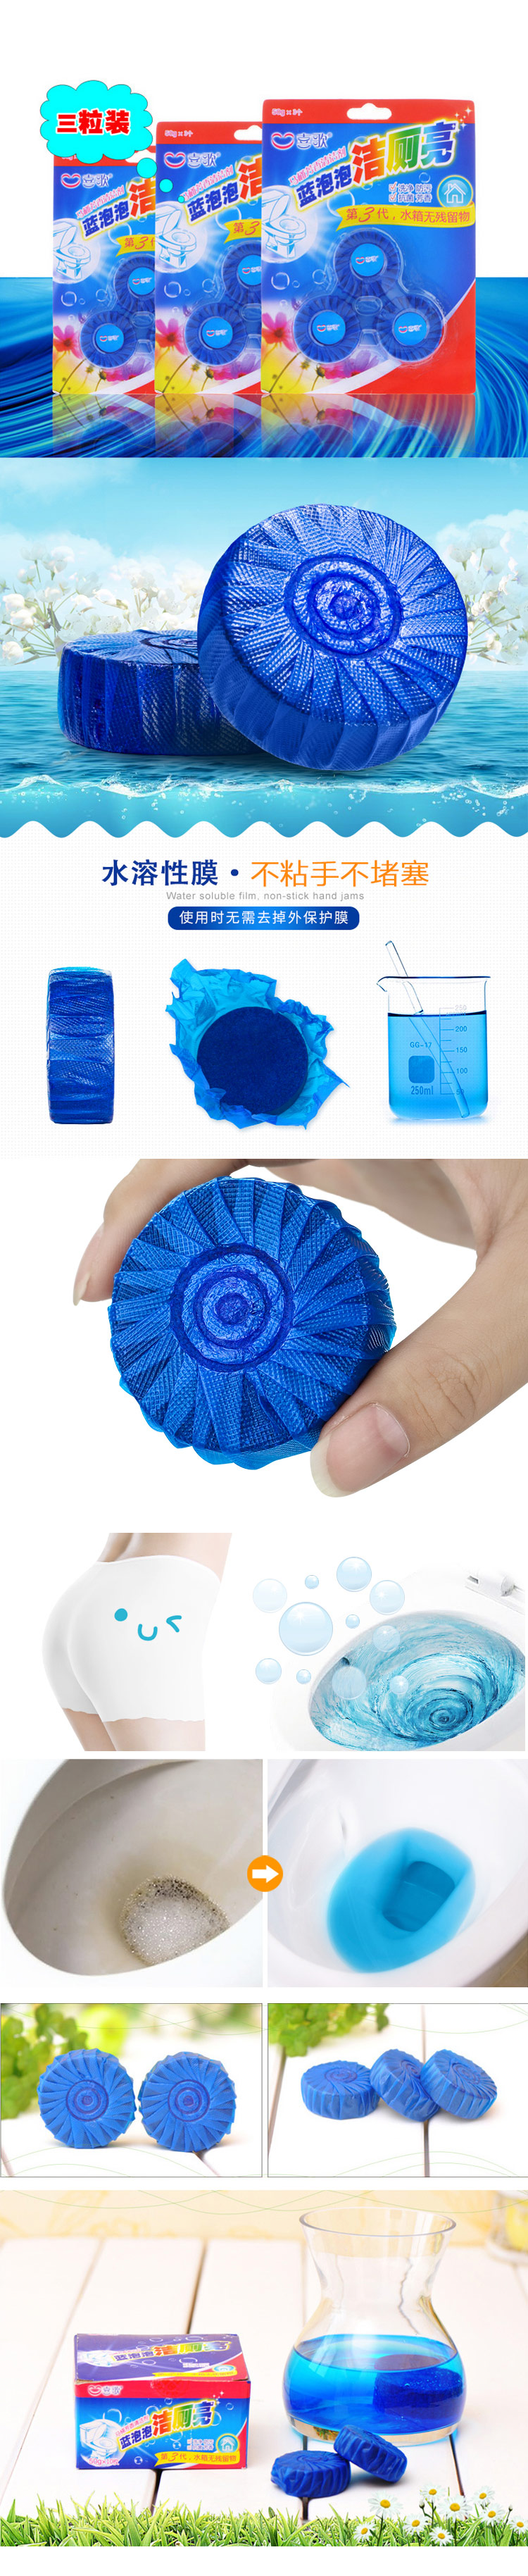 喜歌第三代蓝泡泡/洁厕亮/马桶芳香清洁剂-3个装 。